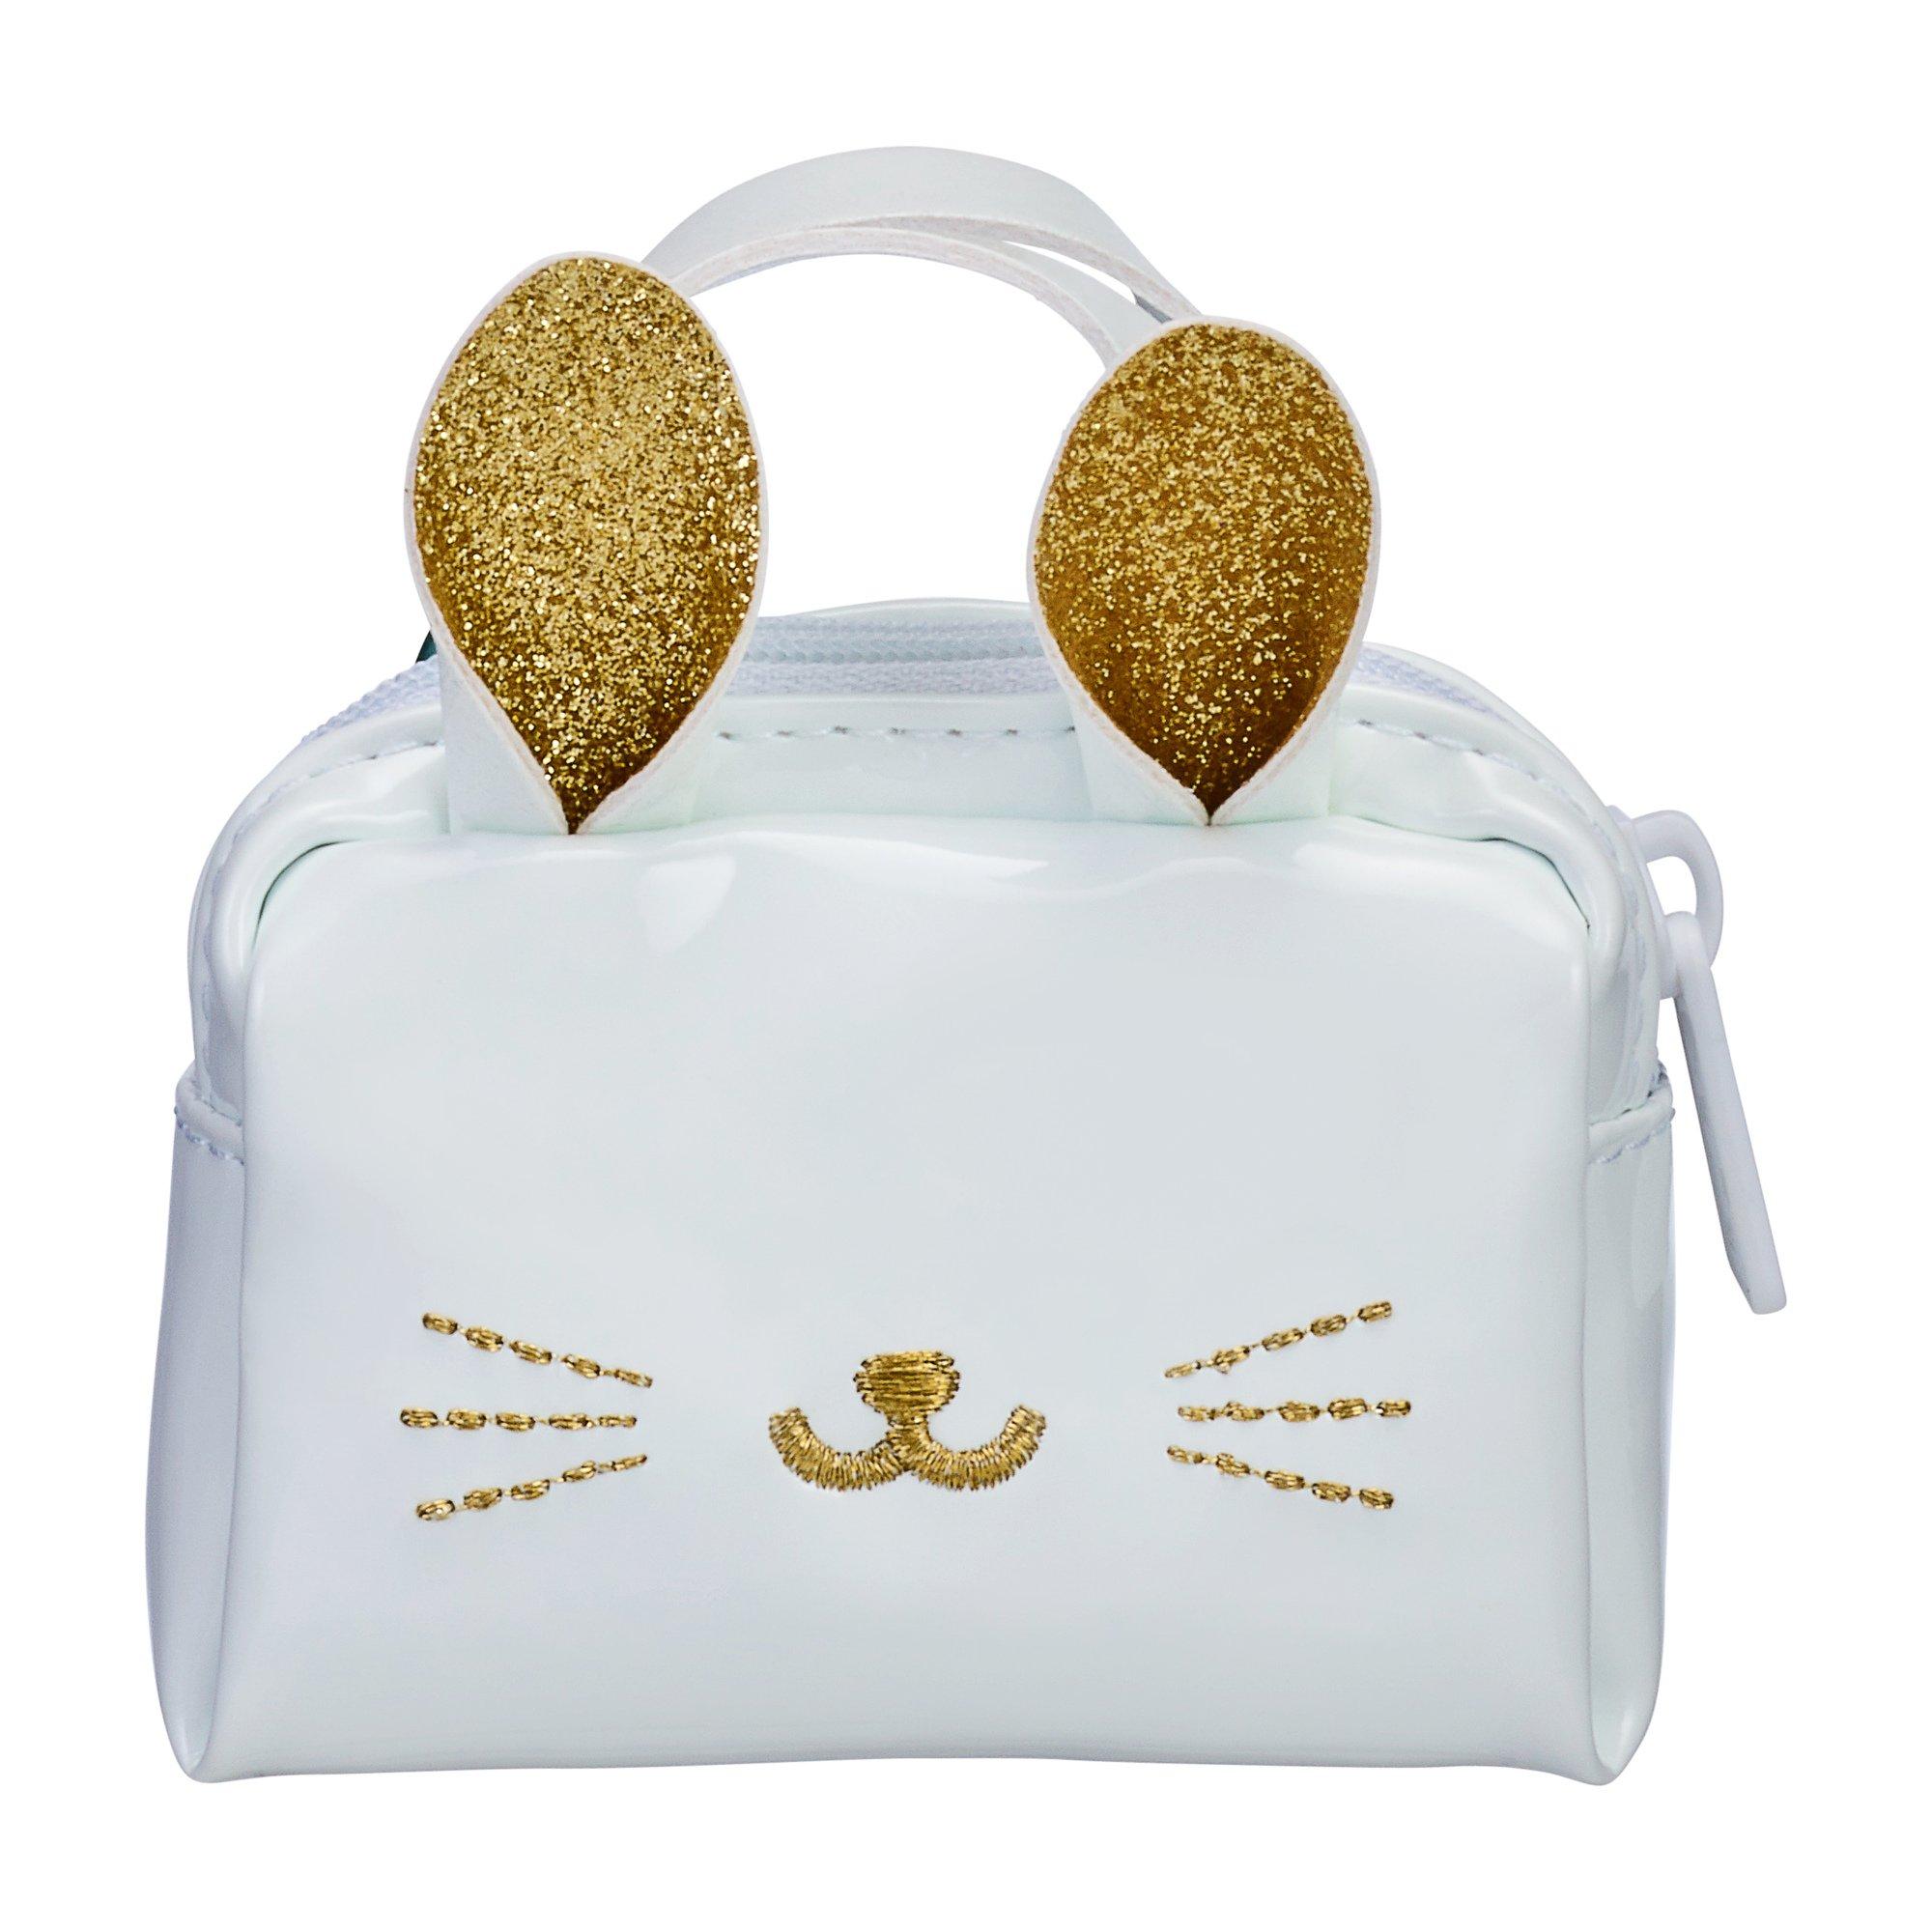 Matching bag and bag charms : r/handbags